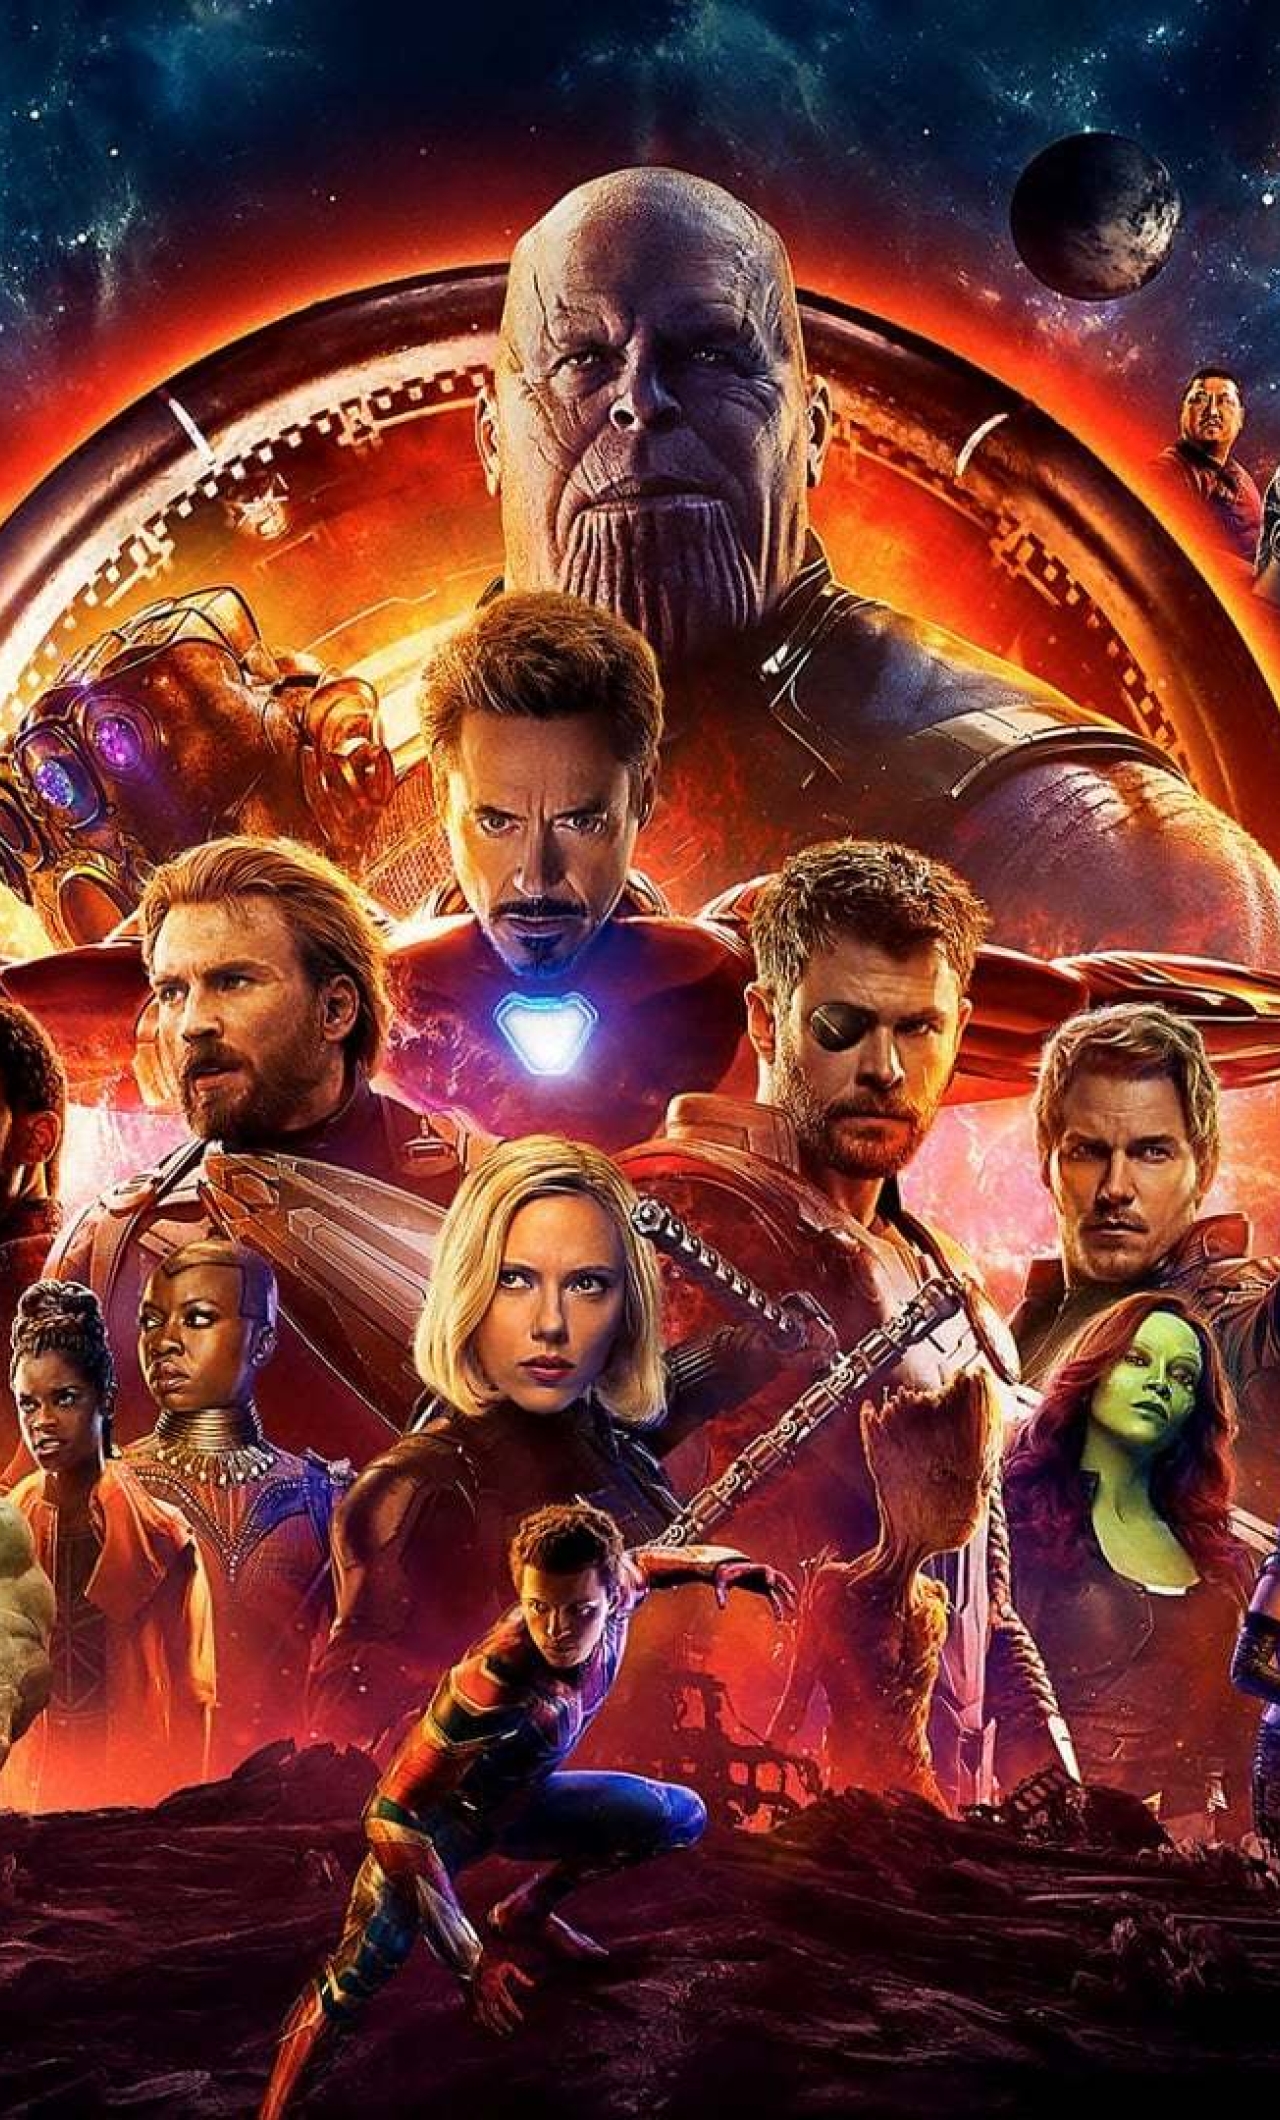 Avengers Infinity War Official Poster, Full HD Wallpaper